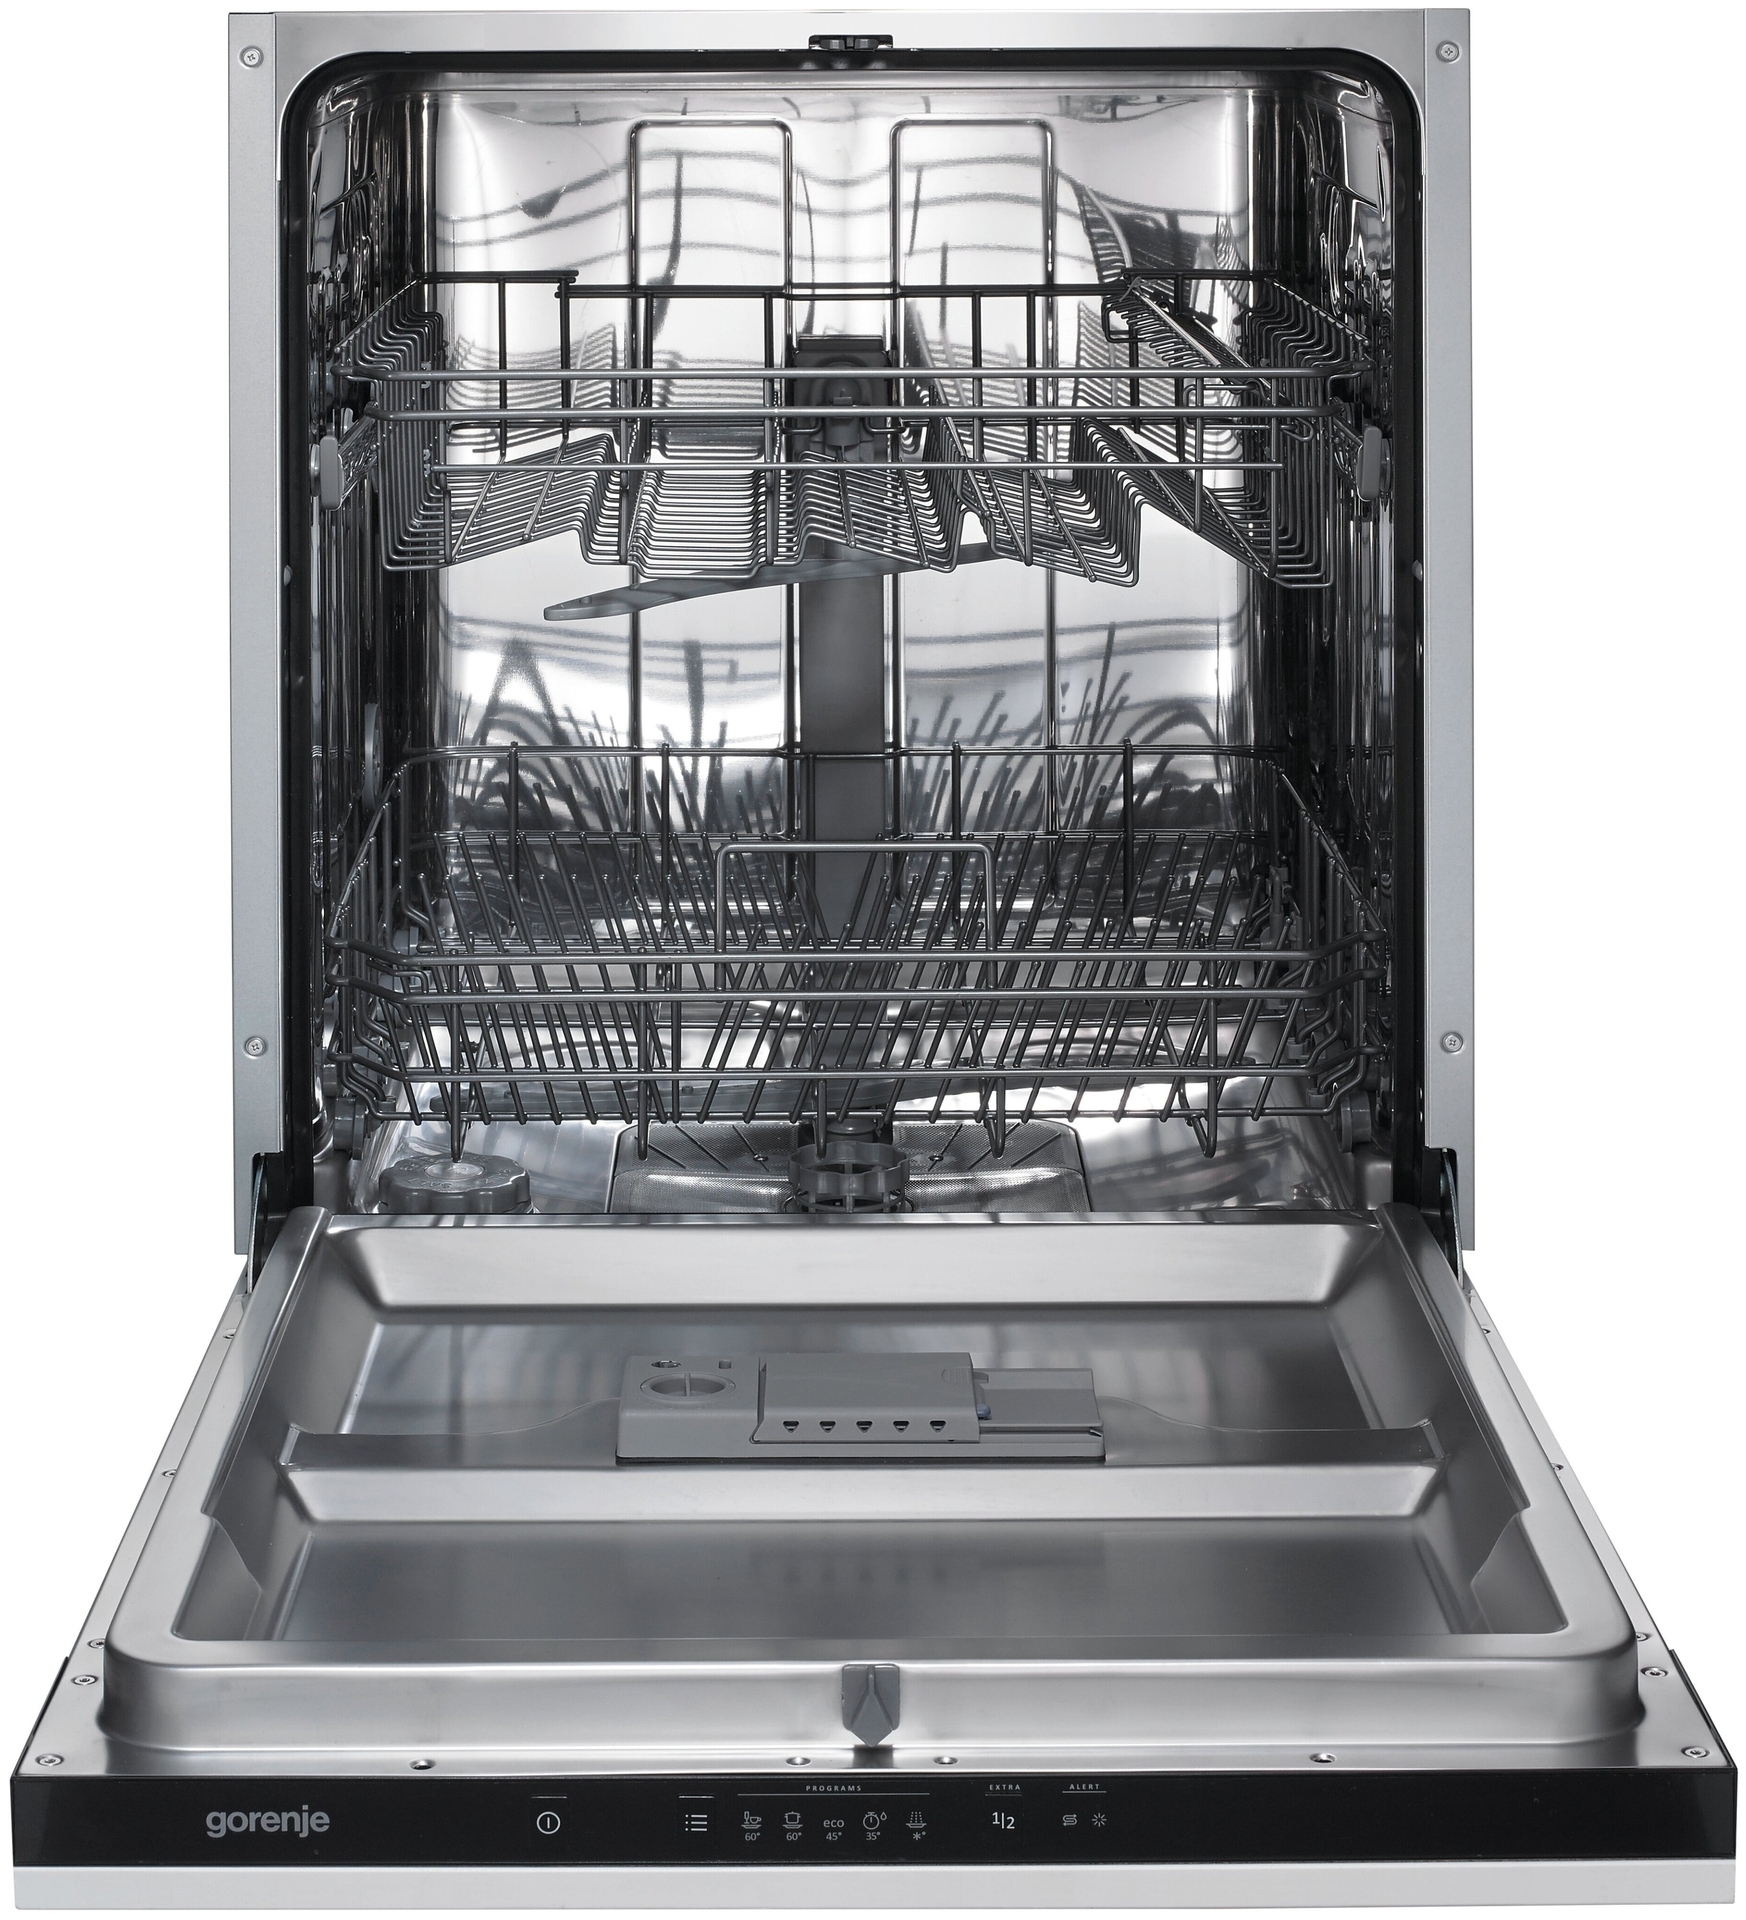 Посудомоечная машина горение встраиваемая 60 см. Встраиваемая посудомоечная машина Gorenje gv62010. Посудомоечная машина Gorenje gv62011. Посудомоечная машина Gorenje gv62010. Посудомоечная машина Gorenje gv62012.